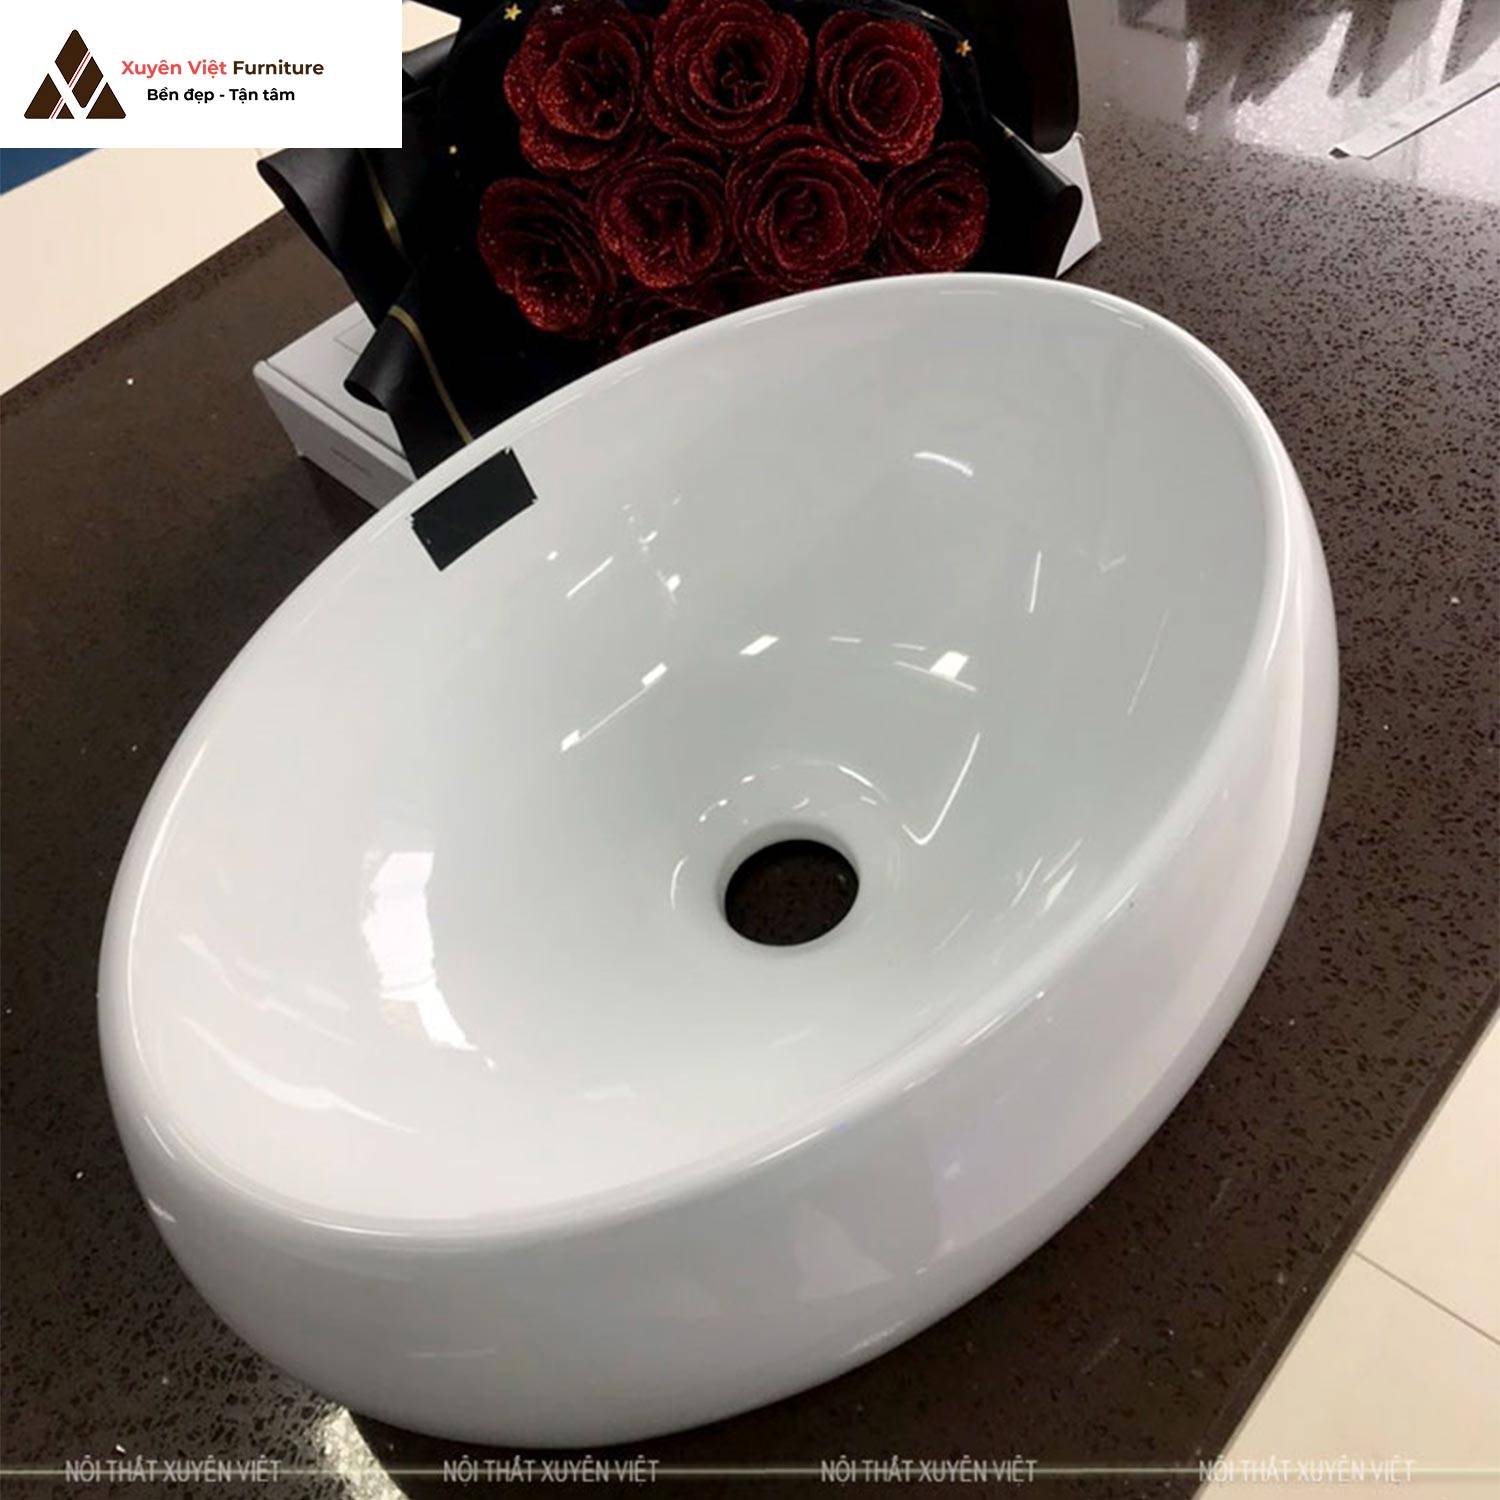 Hình ảnh chiếc chậu rửa lavabo đặt bàn hình elip tông màu trắng XVCE01 bày bán sẵn tại Xuyên Việt